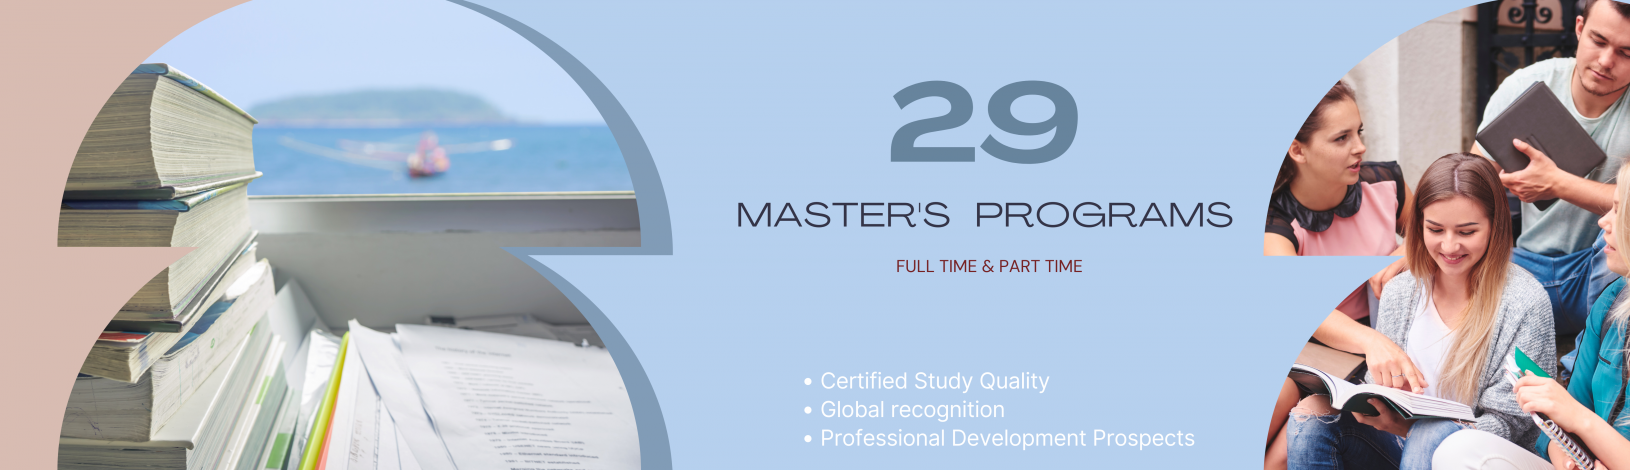 Master's Programs